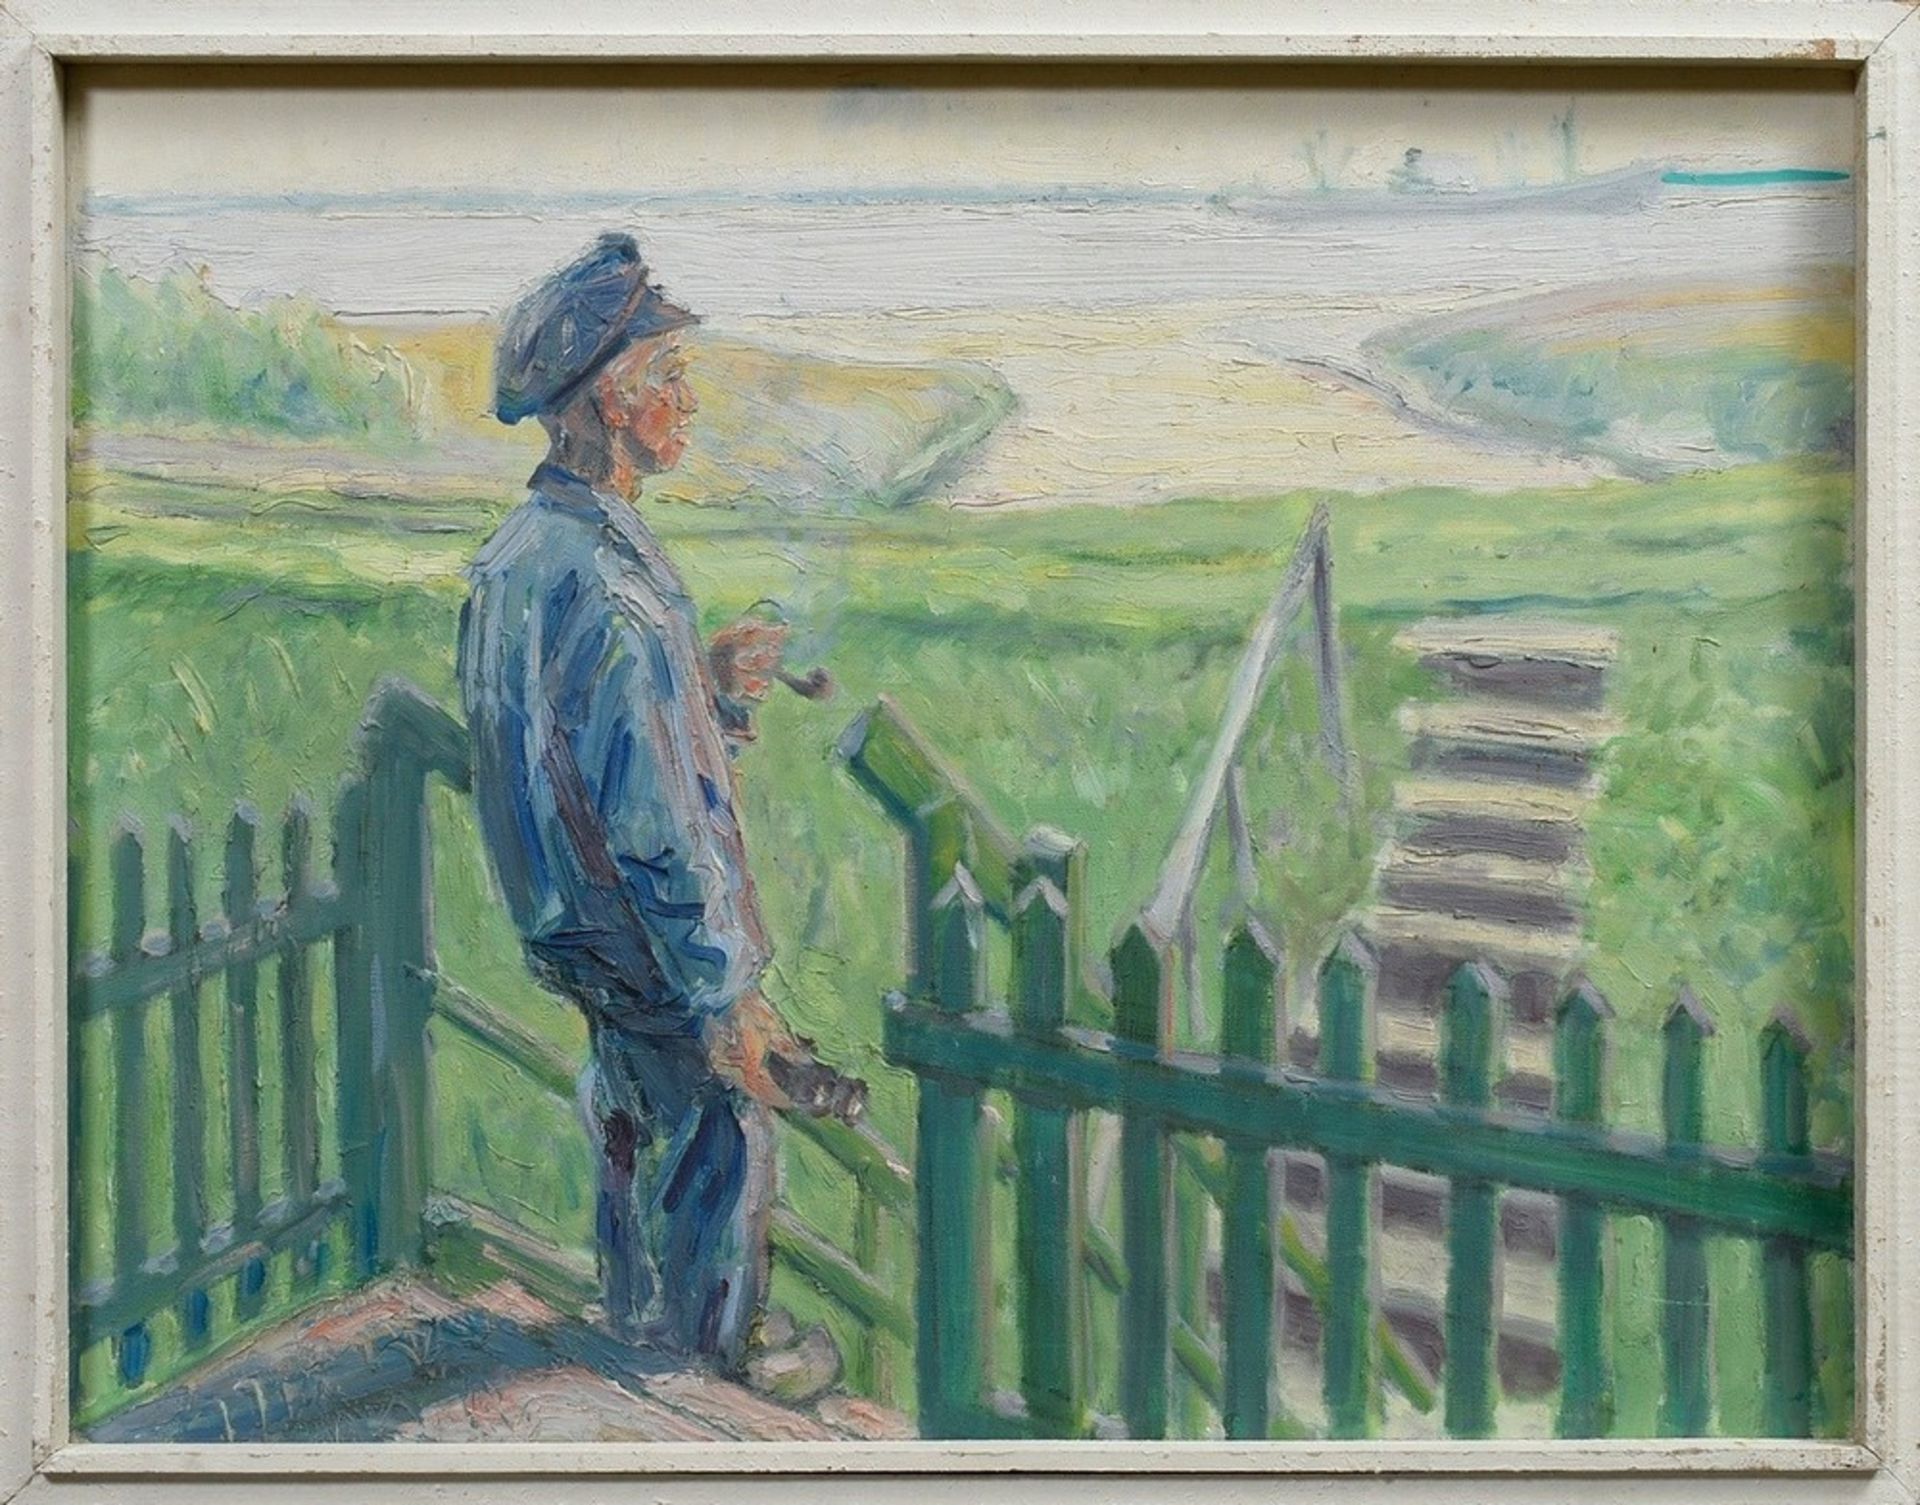 Fredderich, Rudolf (1886-1976) “Schiffer an der Elbe“, Öl/Kohle/Leinwand, 51x66cm (m.R. 56x69cm) - Bild 2 aus 3